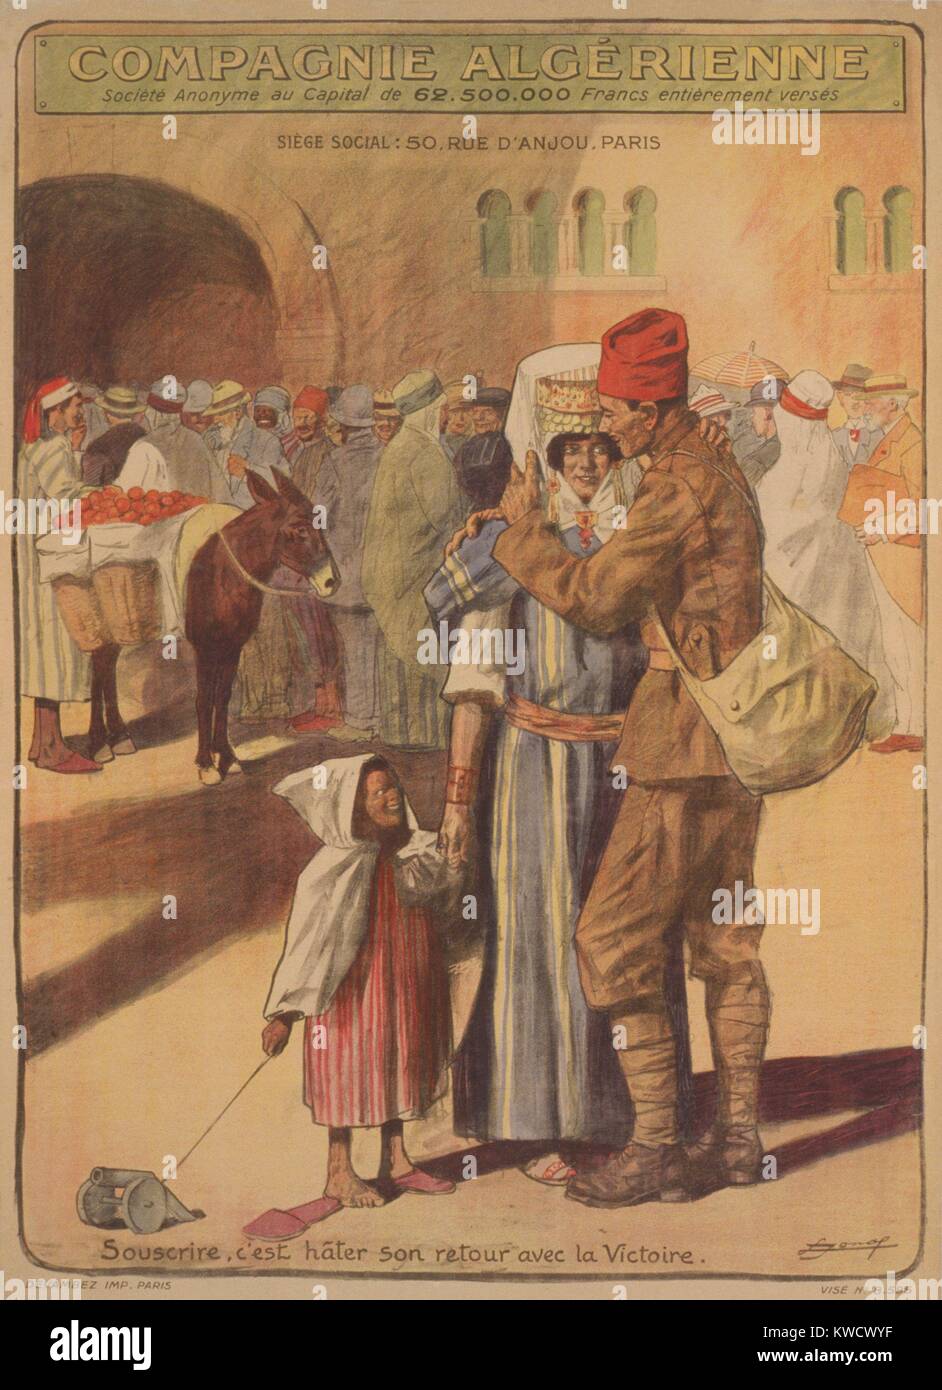 La compañía argelina. Para suscribirse es para acelerar su regreso con una victoria. Guerra Mundial francés 1 póster de recaudación de fondos dirigida a la colonia francesa de Argelia, de 1918 (BSLOC 2017 1 62) Foto de stock